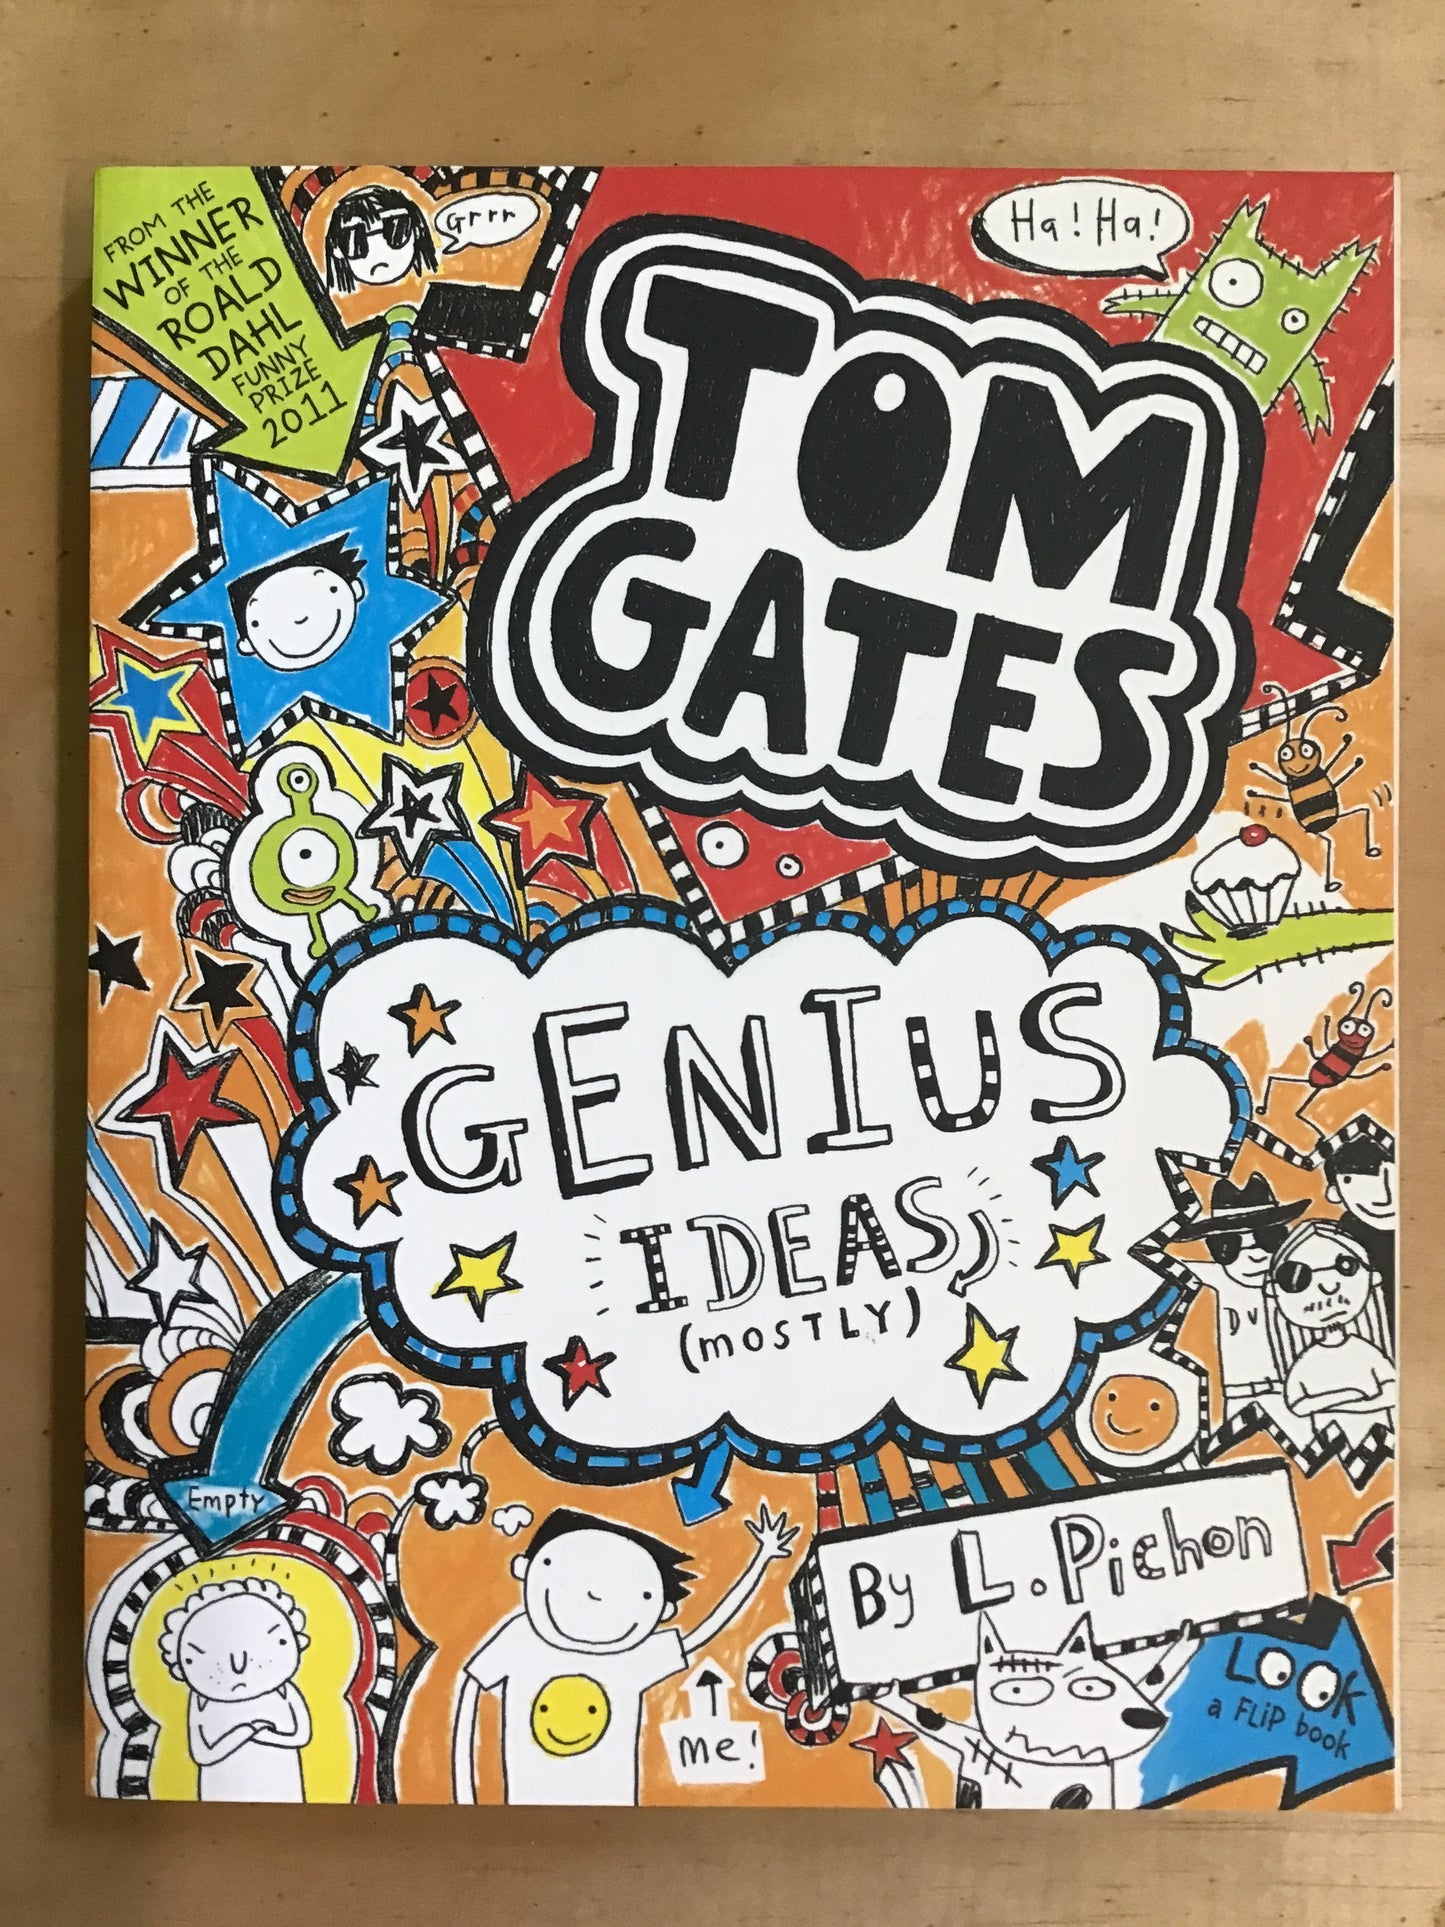 Tom Gates: Genius Ideas